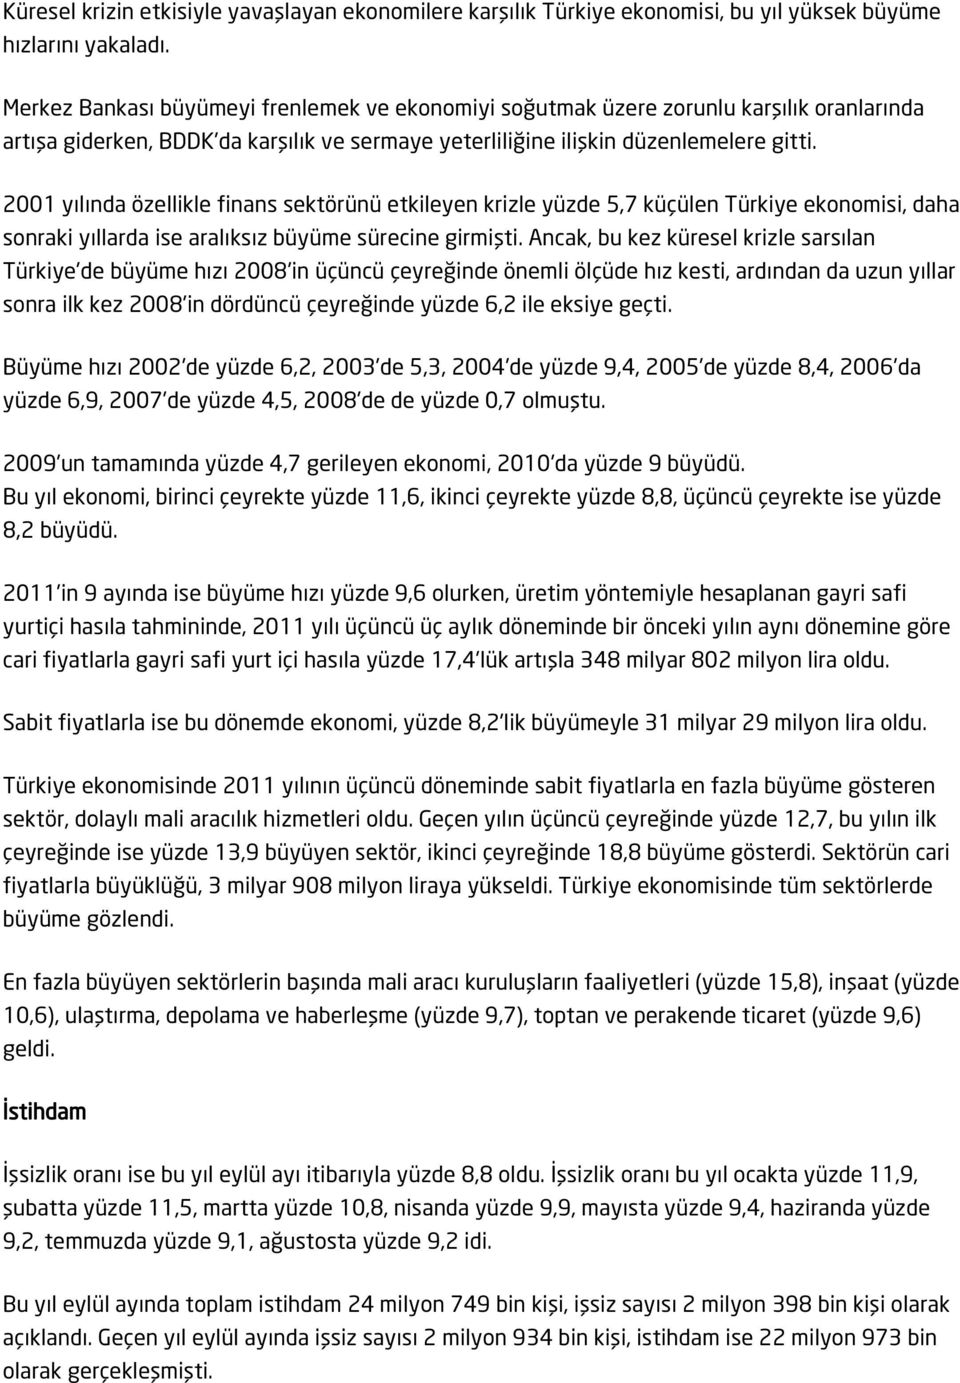 2001 yılında özellikle finans sektörünü etkileyen krizle yüzde 5,7 küçülen Türkiye ekonomisi, daha sonraki yıllarda ise aralıksız büyüme sürecine girmişti.